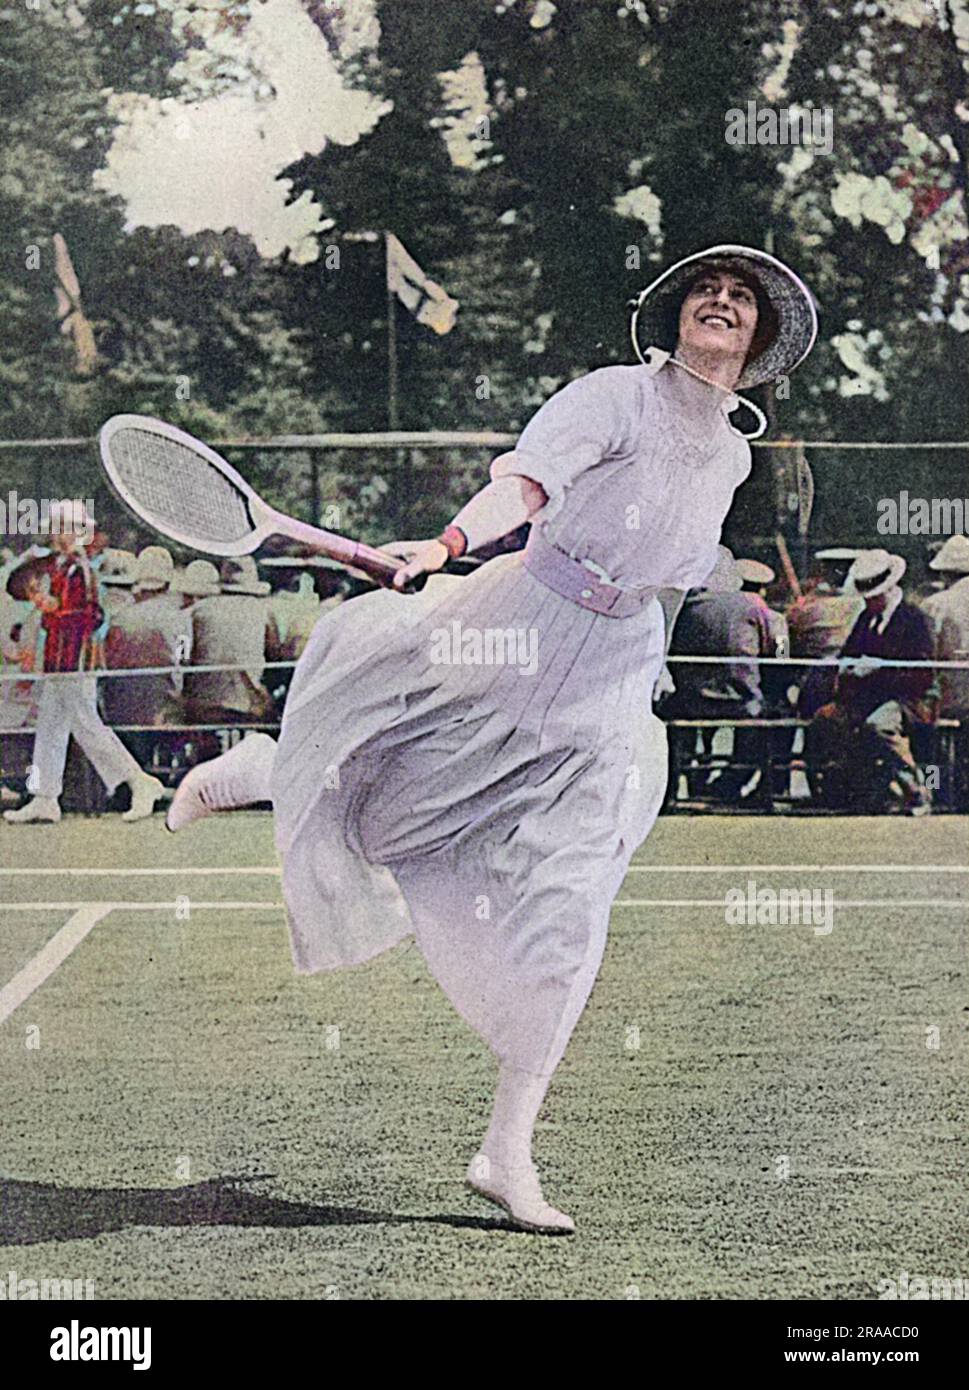 La duchesse de Sutherland, anciennement Lady Eileen Butler, fille aînée de Lord et Lady Lanesborough, prenant part à un tournoi de tennis à Surbiton, organisé à l'aide de fonds de guerre, principalement pour les hôpitaux. Date: 1916 Banque D'Images